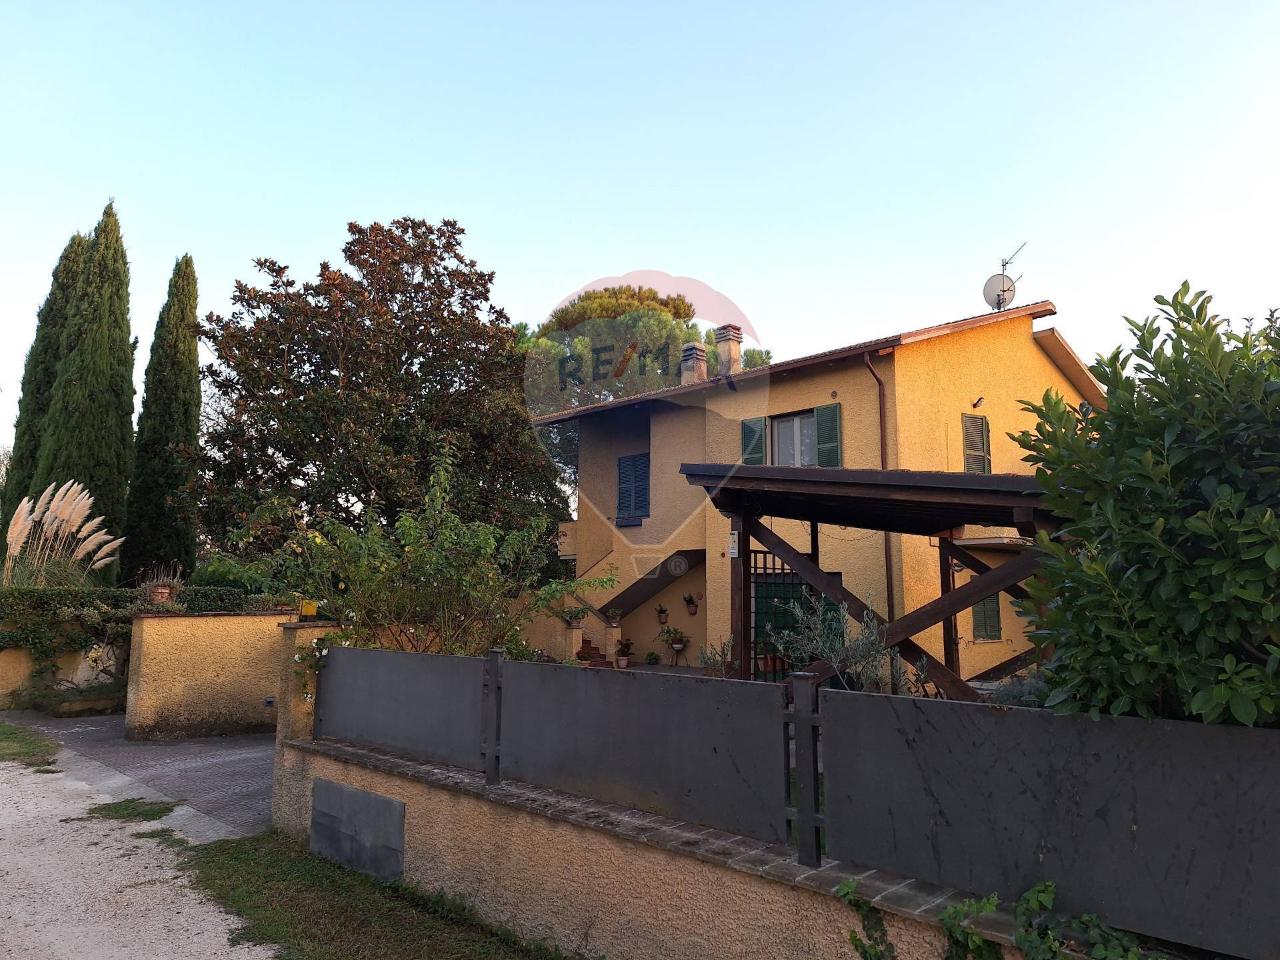 Villa in vendita a Foligno